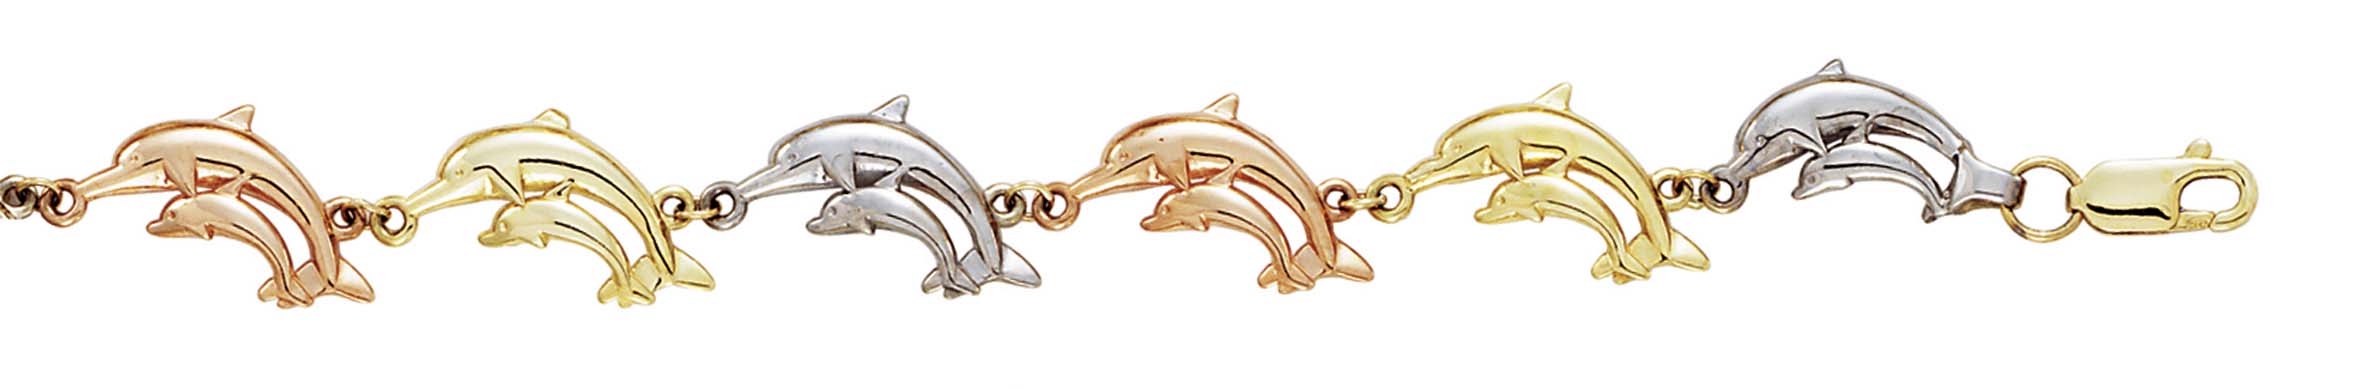 
14k Tricolor Gold Dolphins Bracelet - 7.25 Inch
